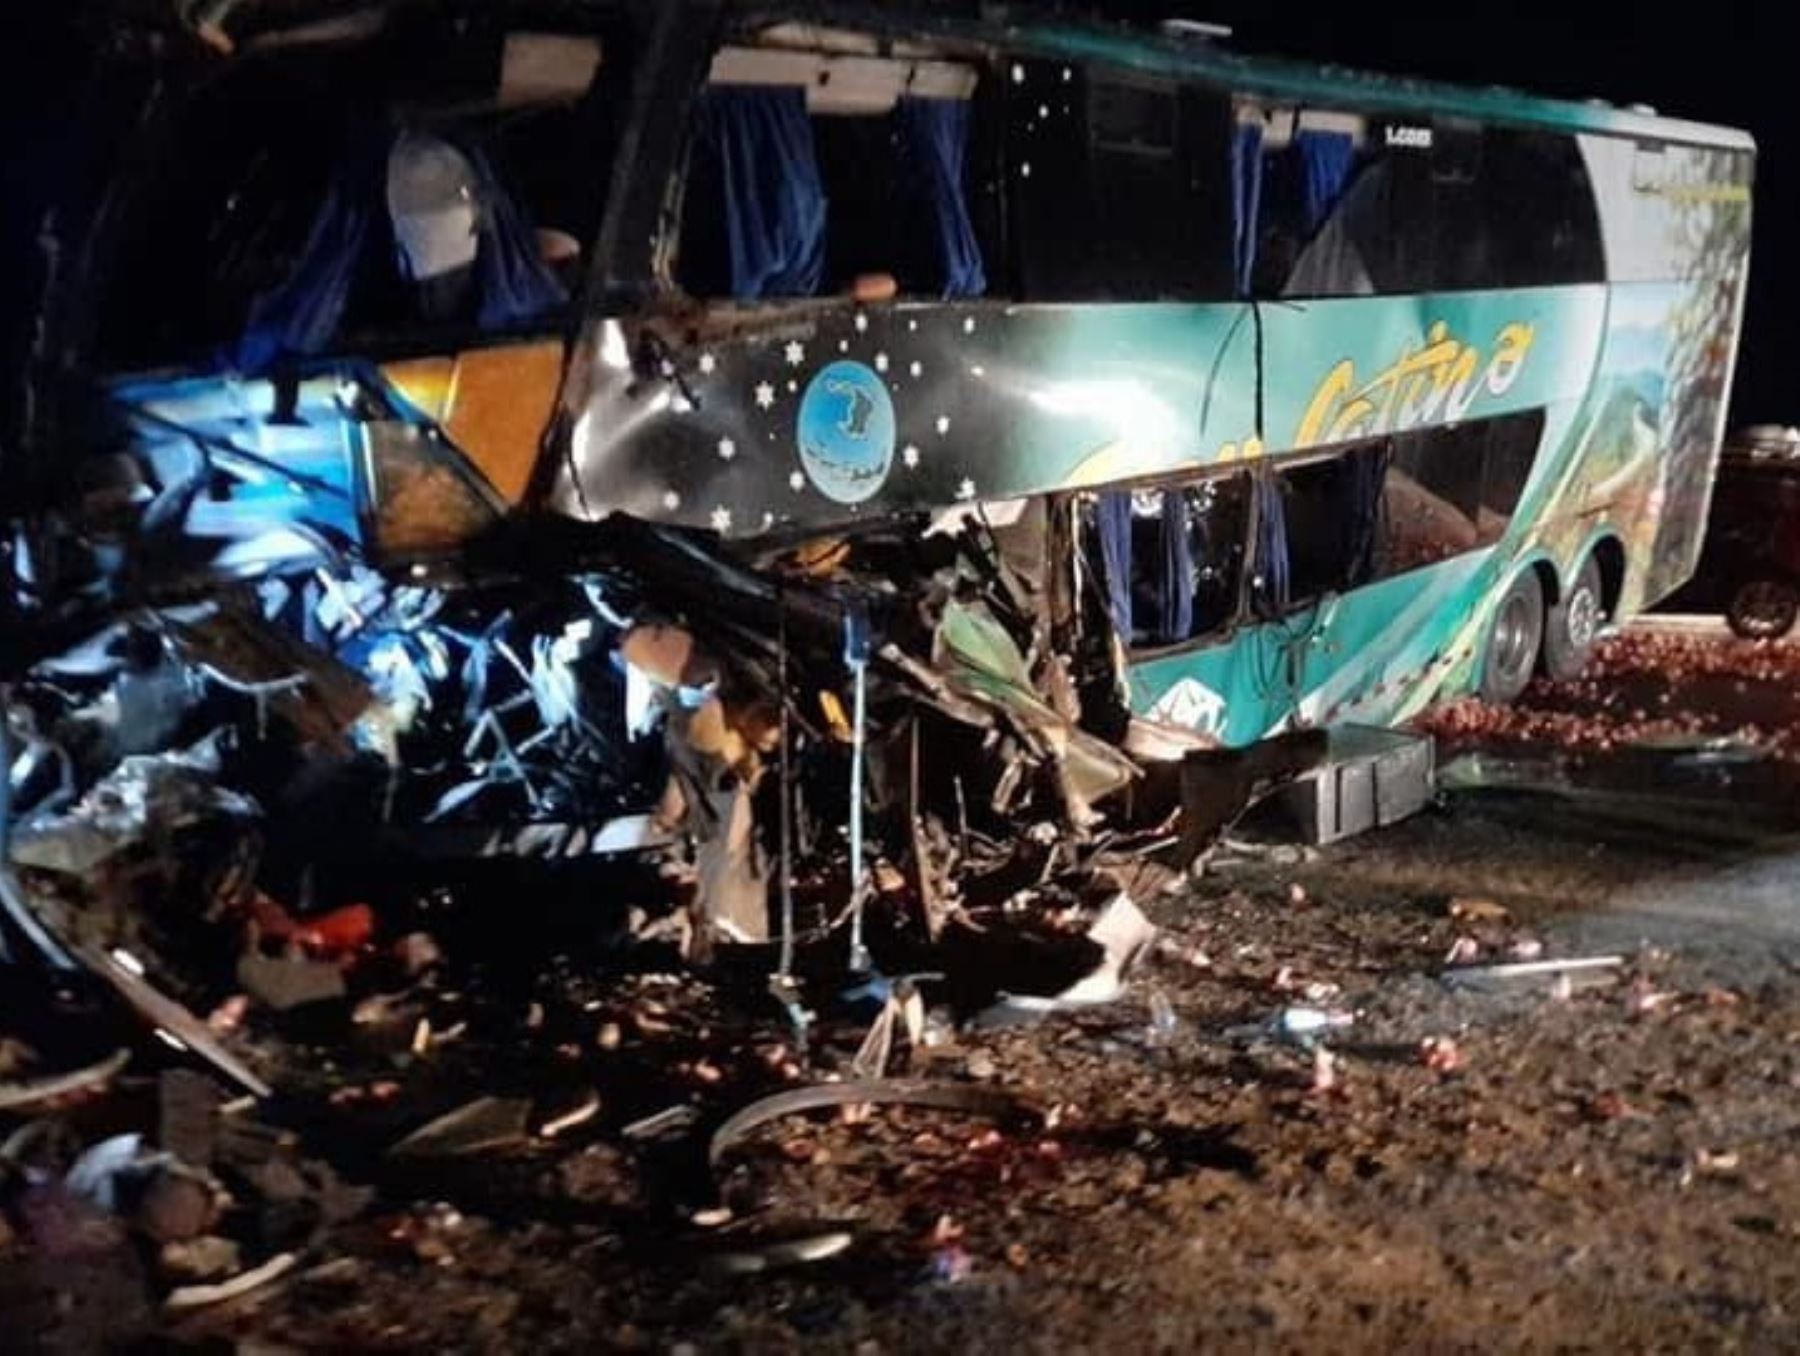 Un bus interprovincial que cubría la ruta Nasca-Arequipa chocó contra un camión de carga. El accidente dejó dos muertos y más de 20 heridos. Foto: Frase Corta/Facebook.